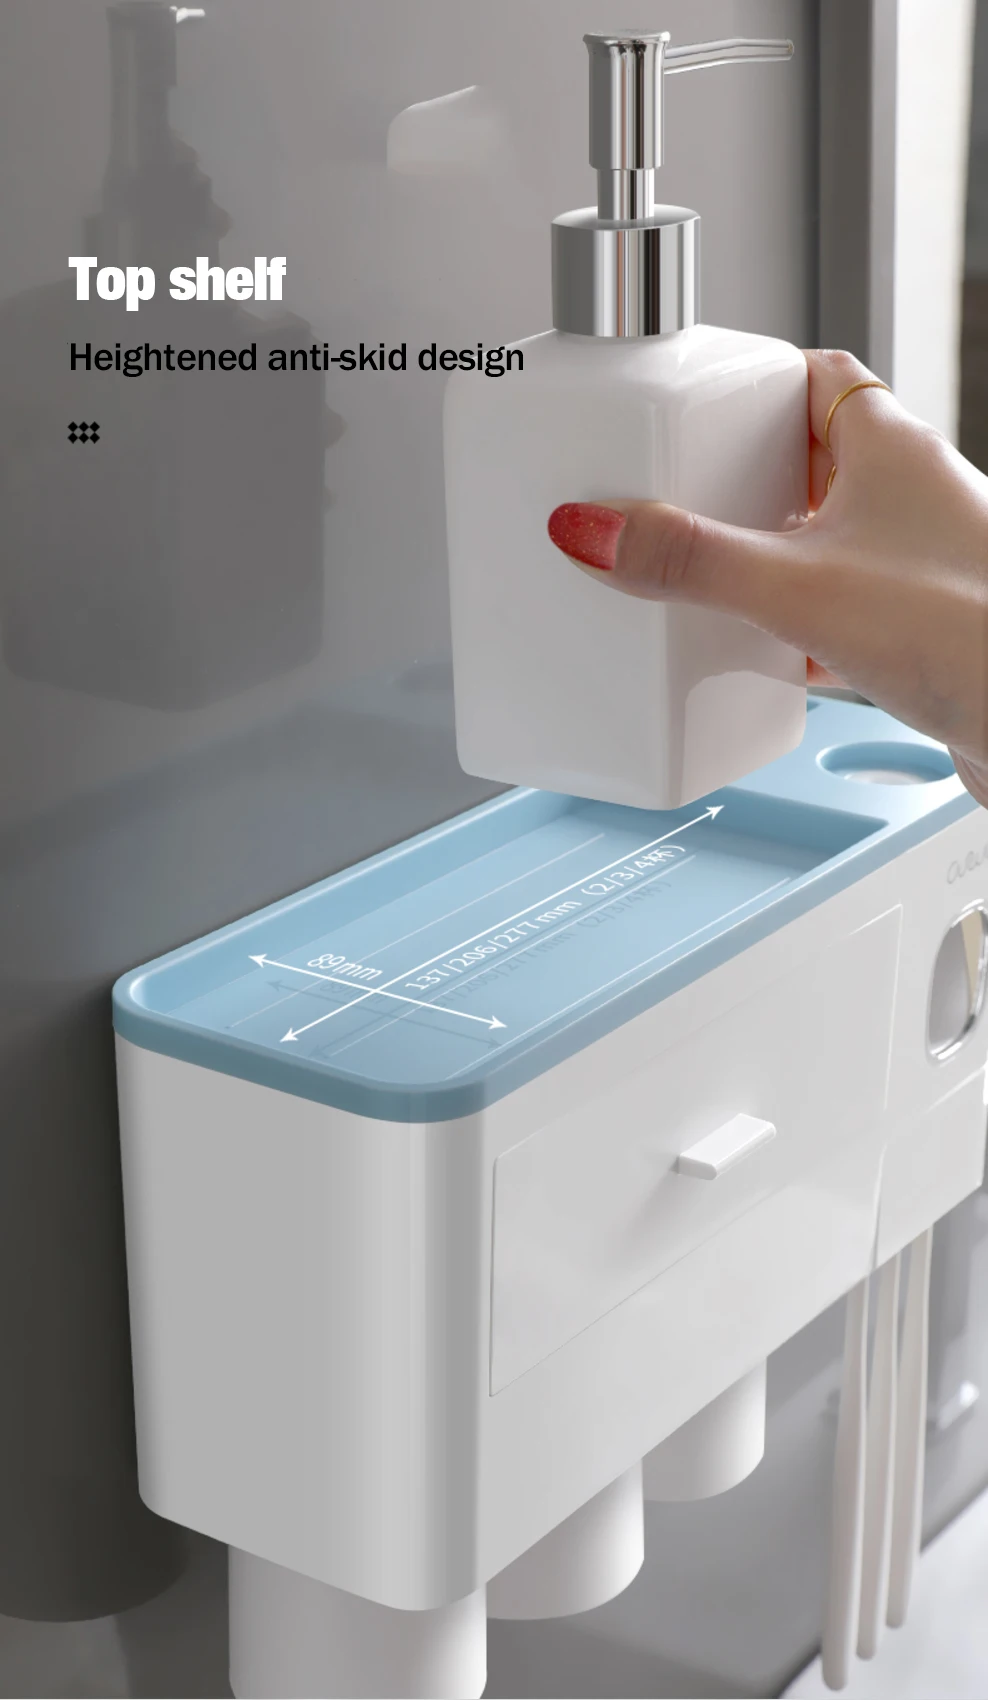 Автоматический Дозатор зубной пасты соковыжималка настенный стеллаж для хранения зубных щеток Держатель с чашкой набор аксессуаров для ванной комнаты